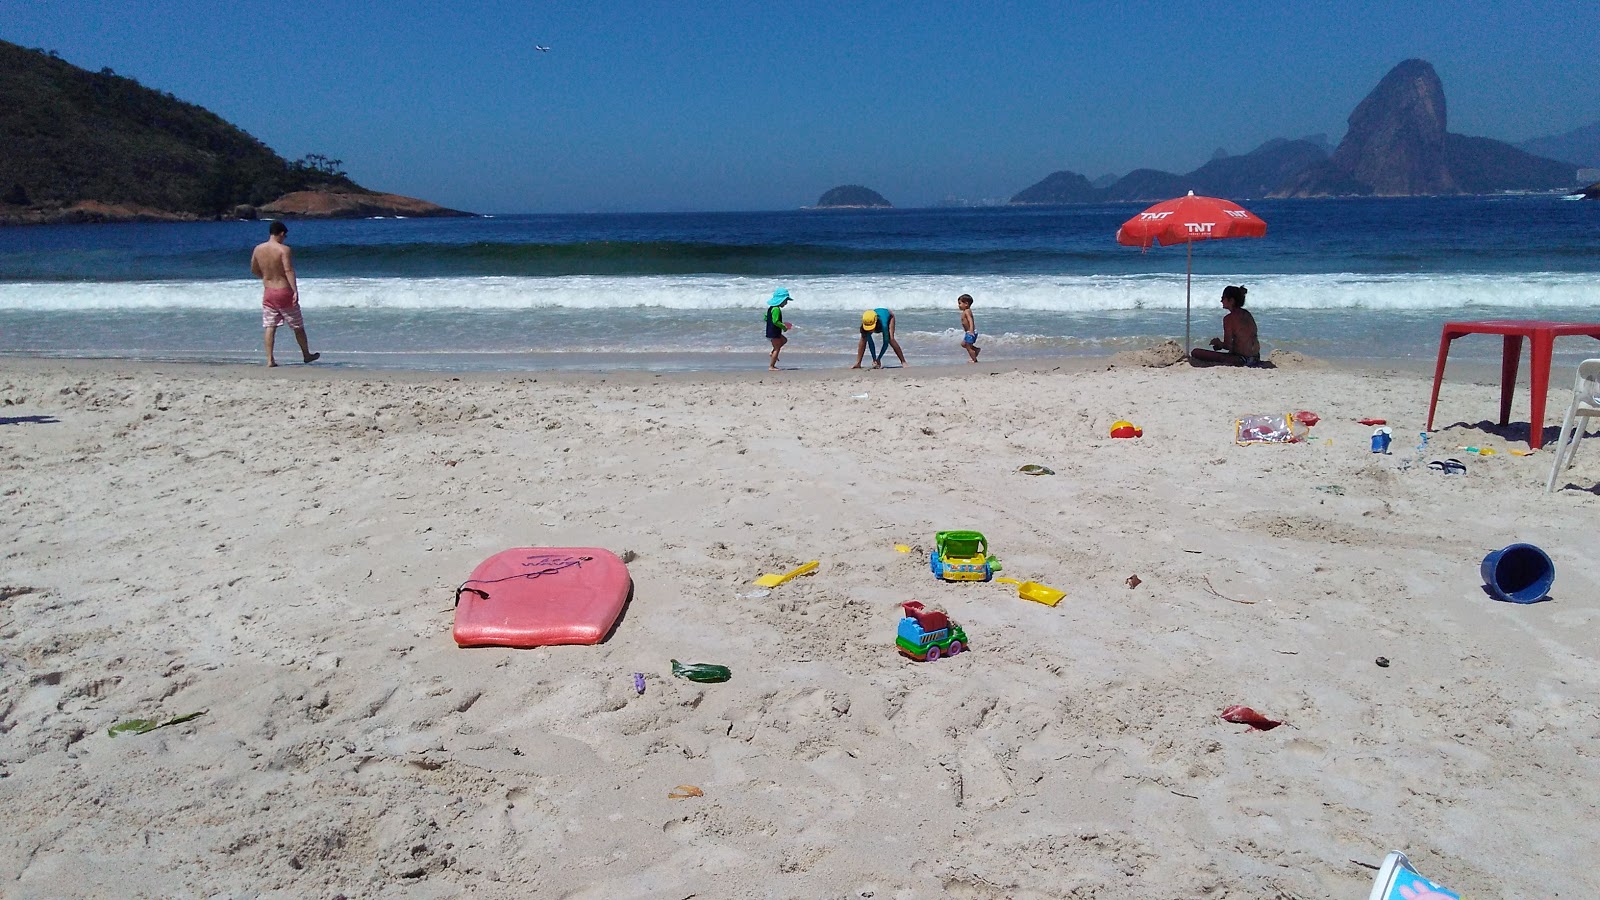 Fotografie cu Praia do Forte Rio Branco cu nivelul de curățenie înalt